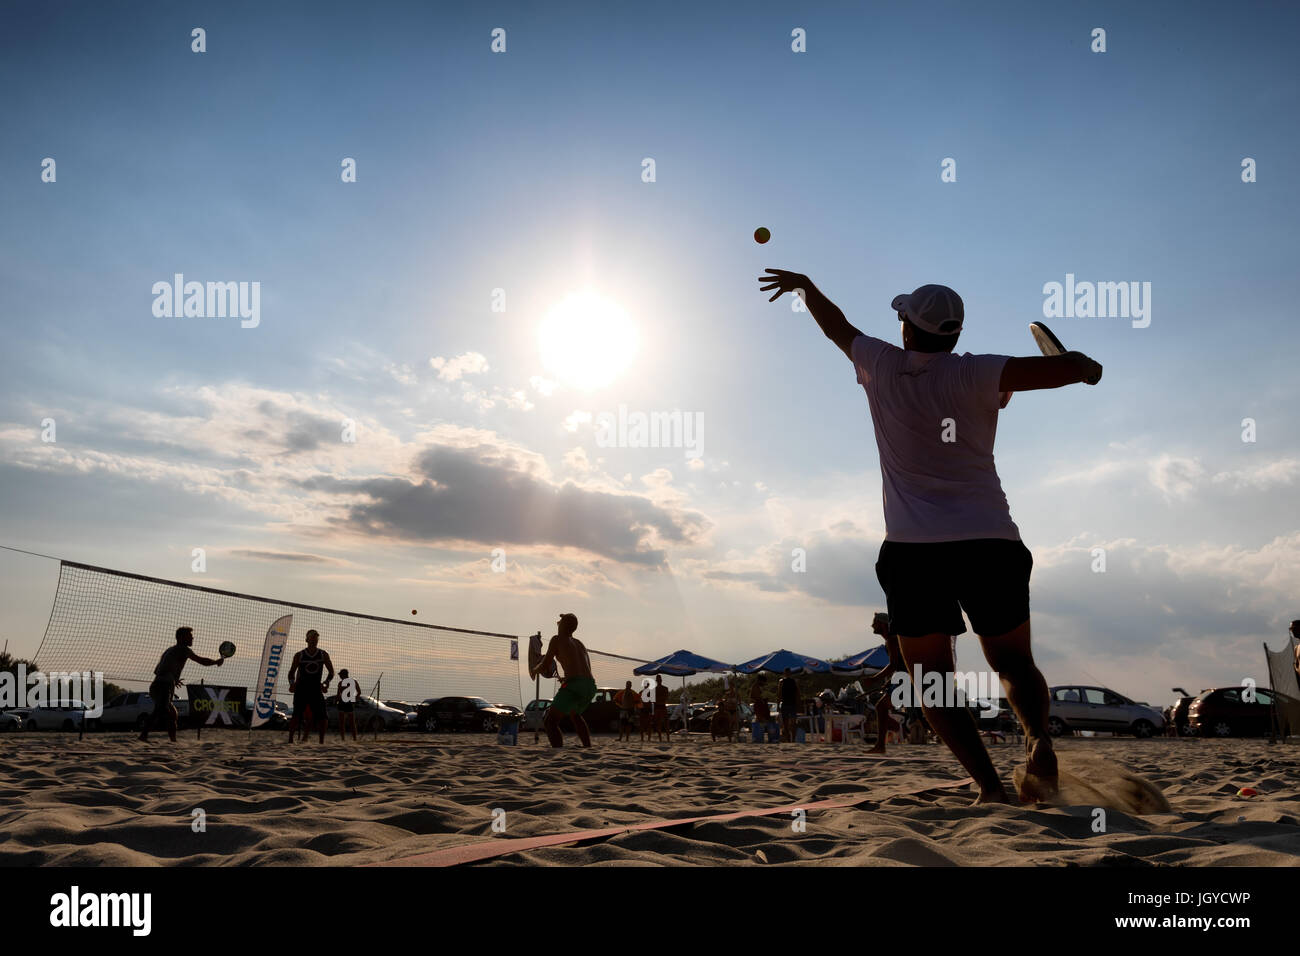 Xanthi, Grèce - Juillet 9, 2017 : des silhouettes d'acteurs non identifiés au cours du 1er tournoi de beach tennis blanc pour le championnat local sur l'Eras Banque D'Images